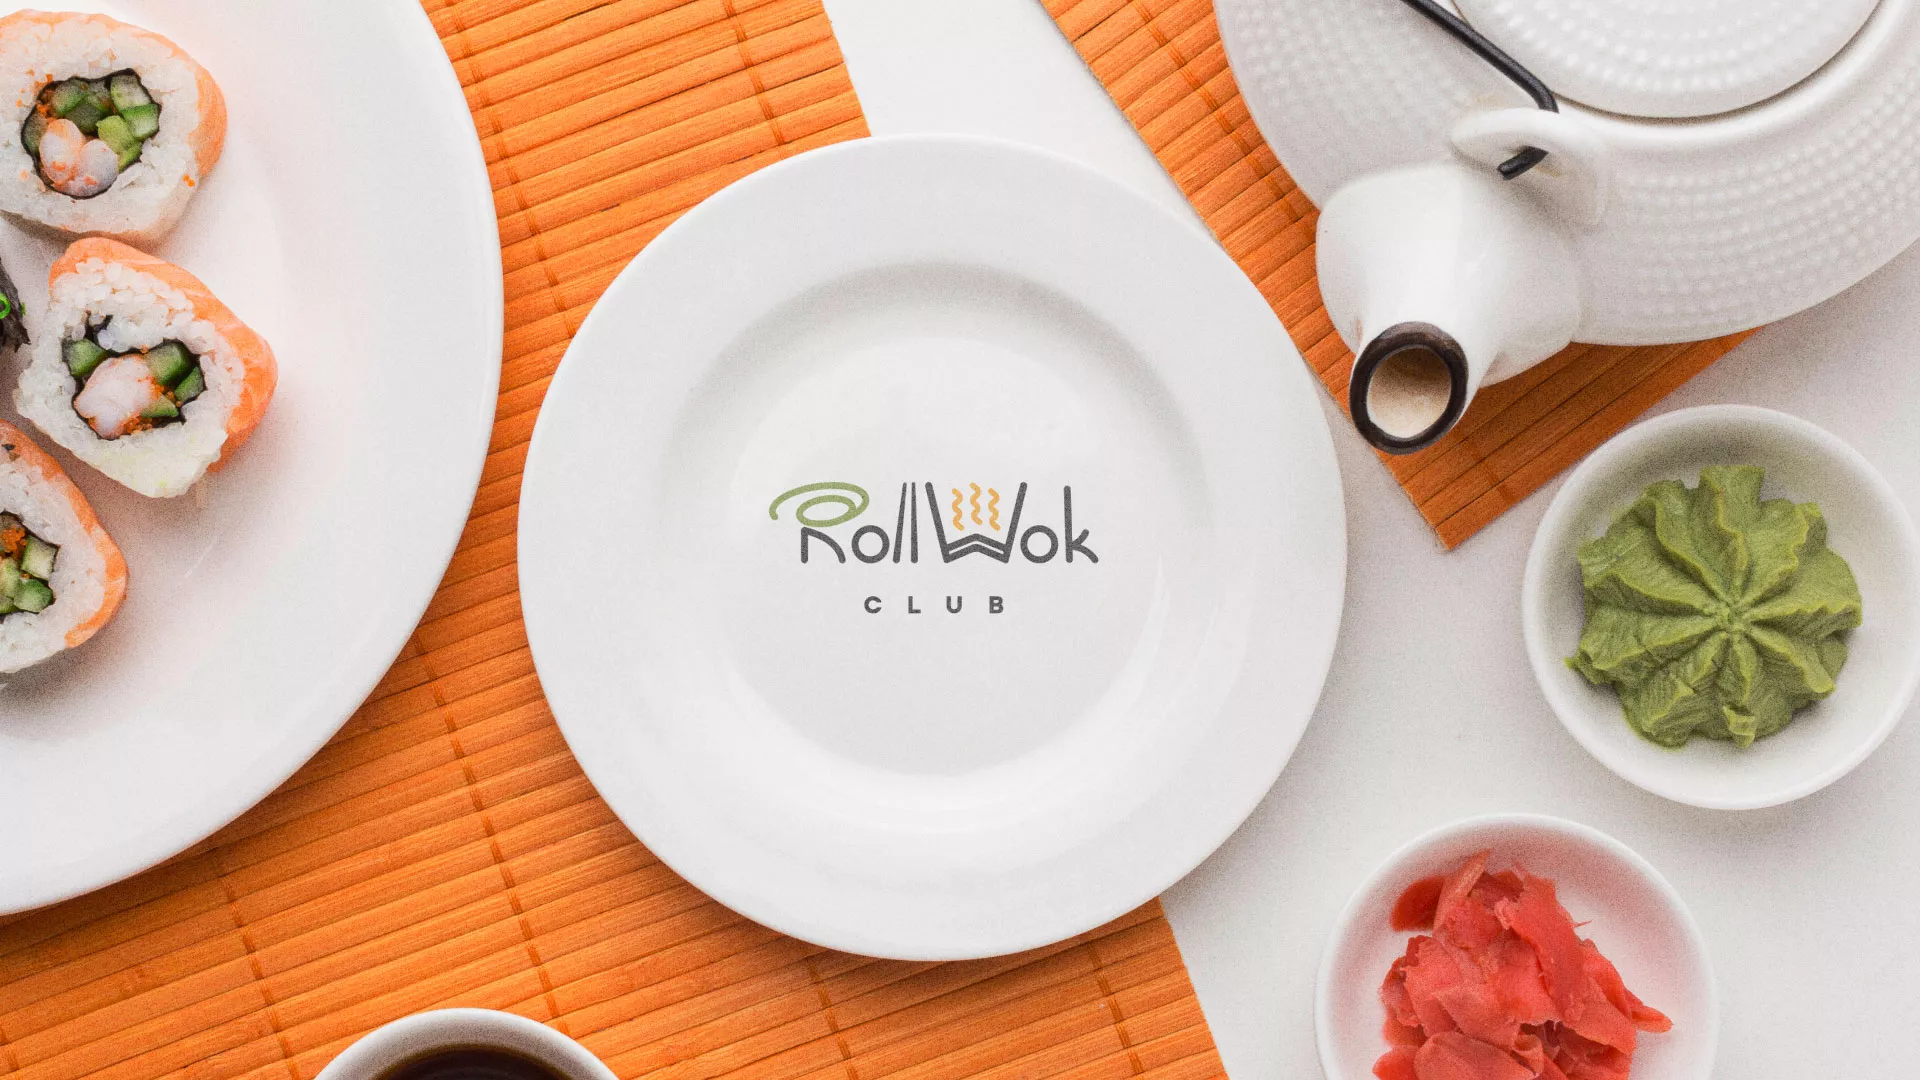 Разработка логотипа и фирменного стиля суши-бара «Roll Wok Club» в Горнозаводске